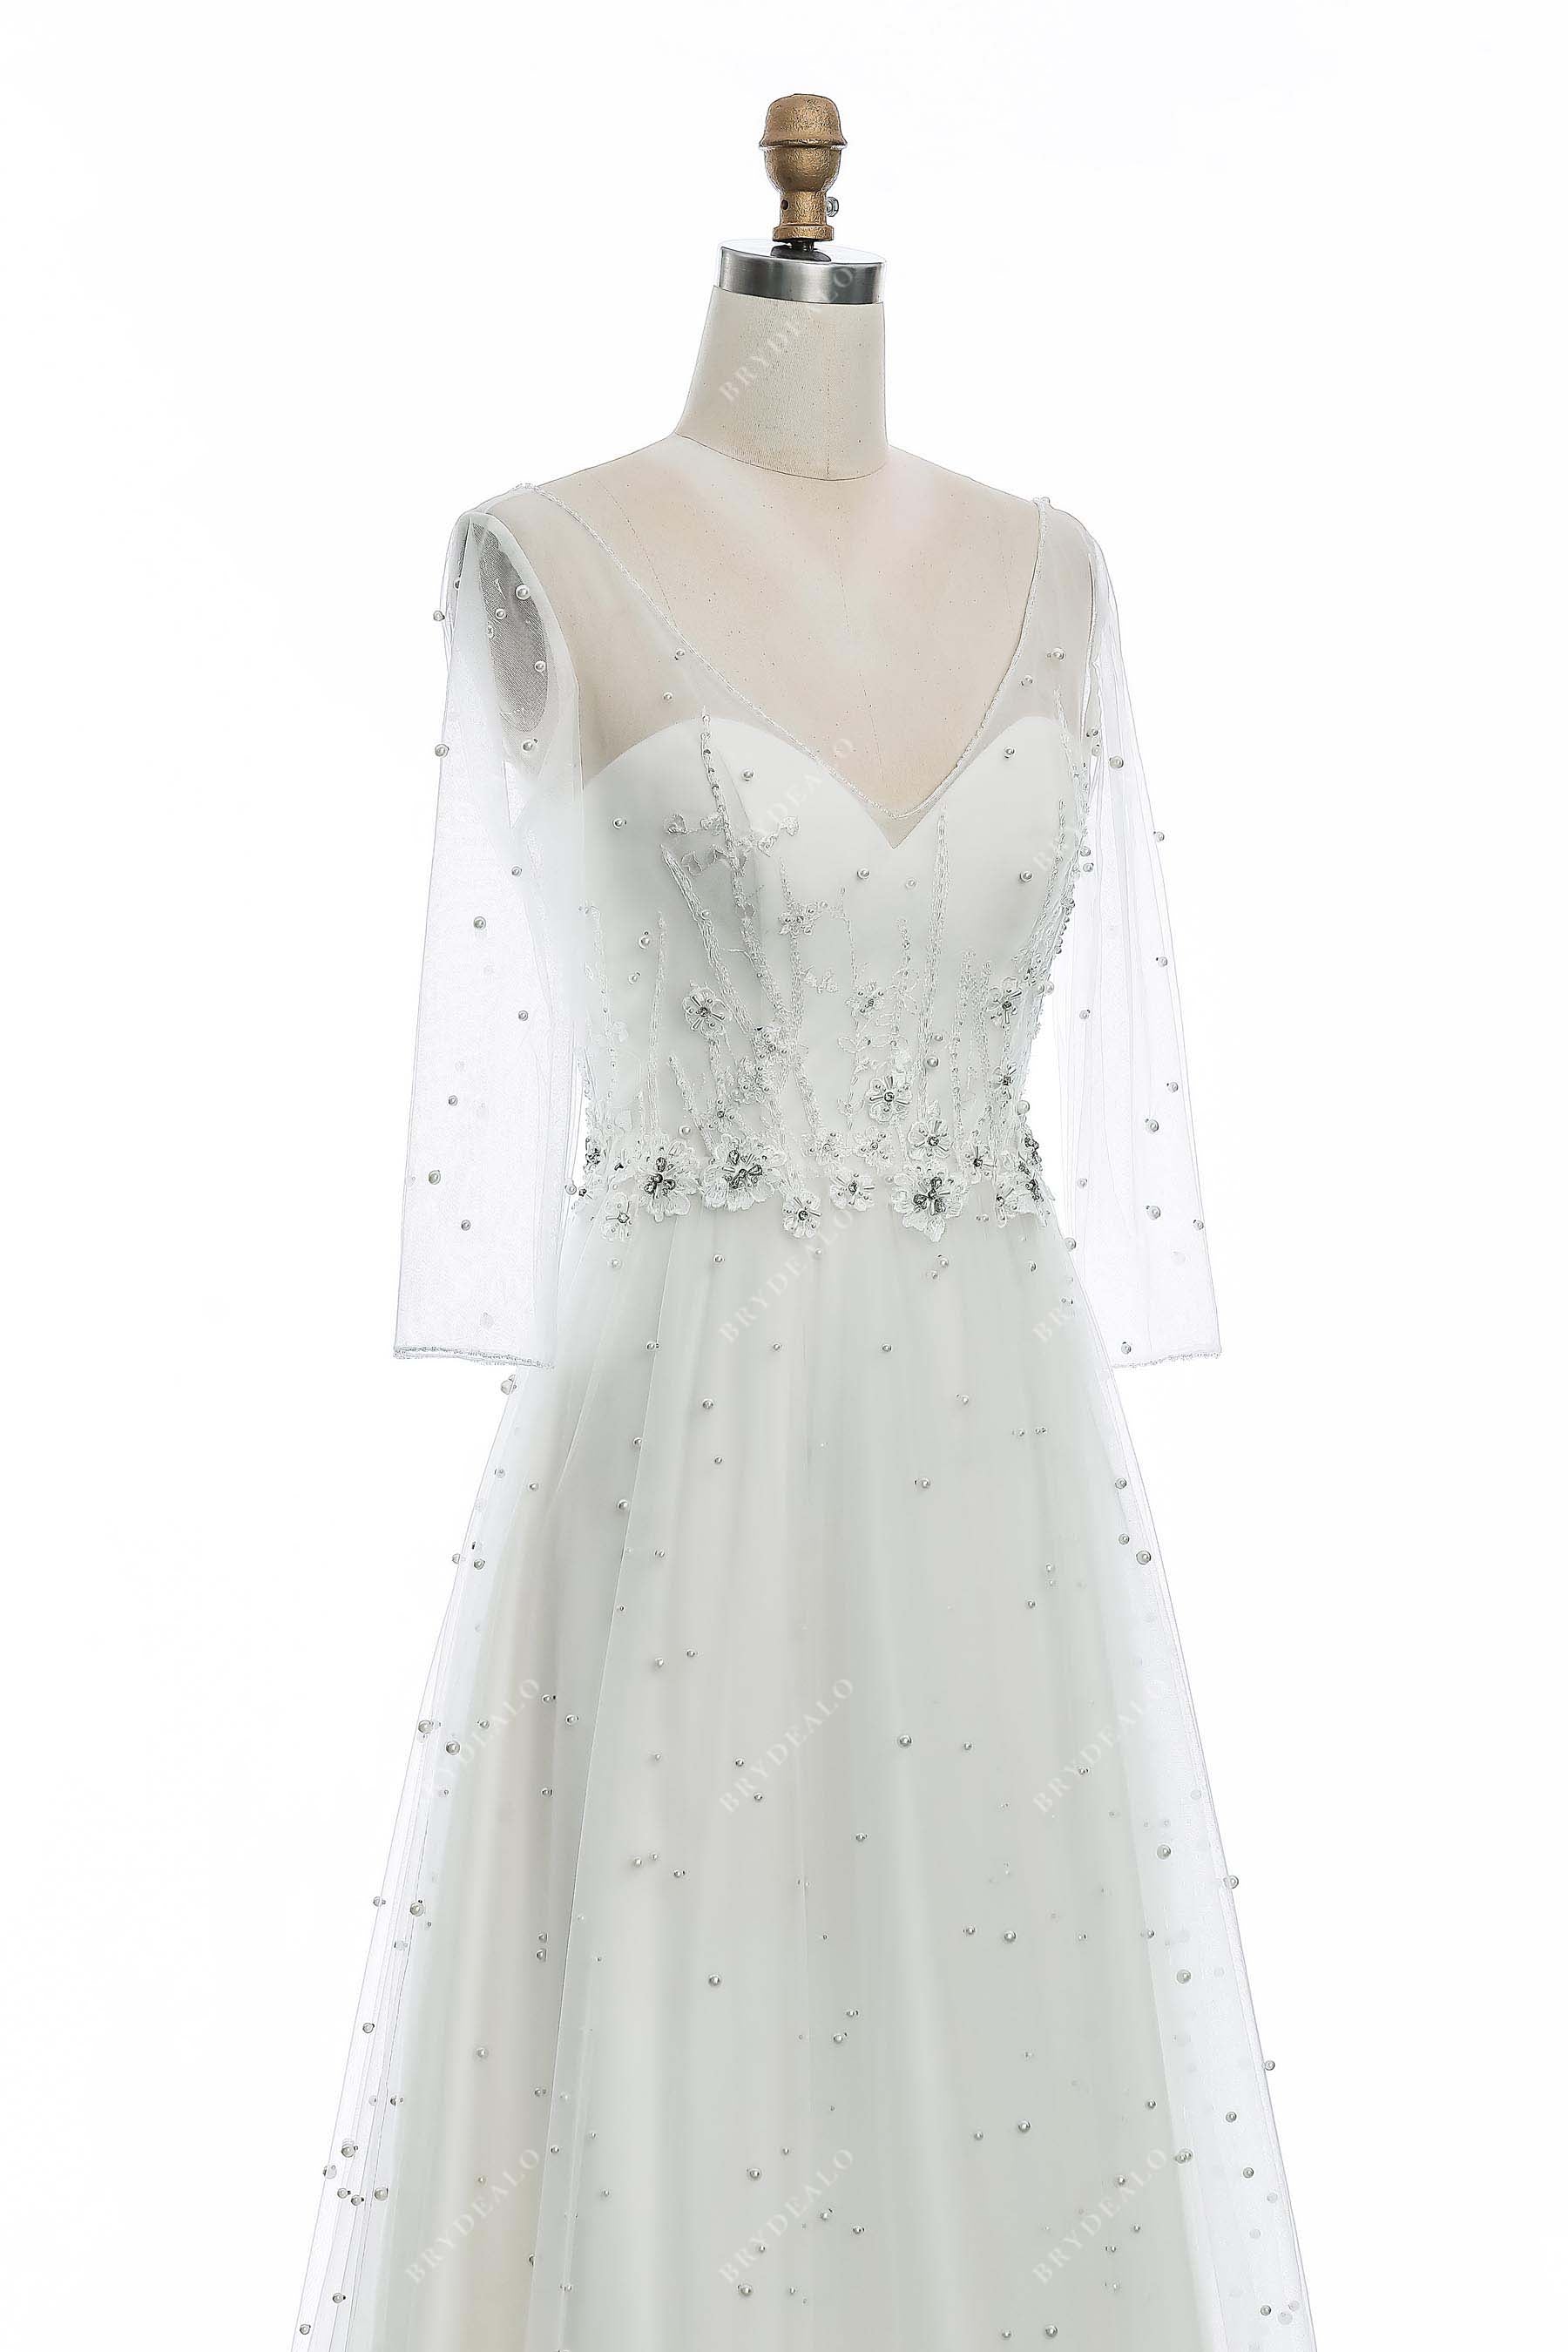 stylish illusion V-neck sheer sleeves bridal dress